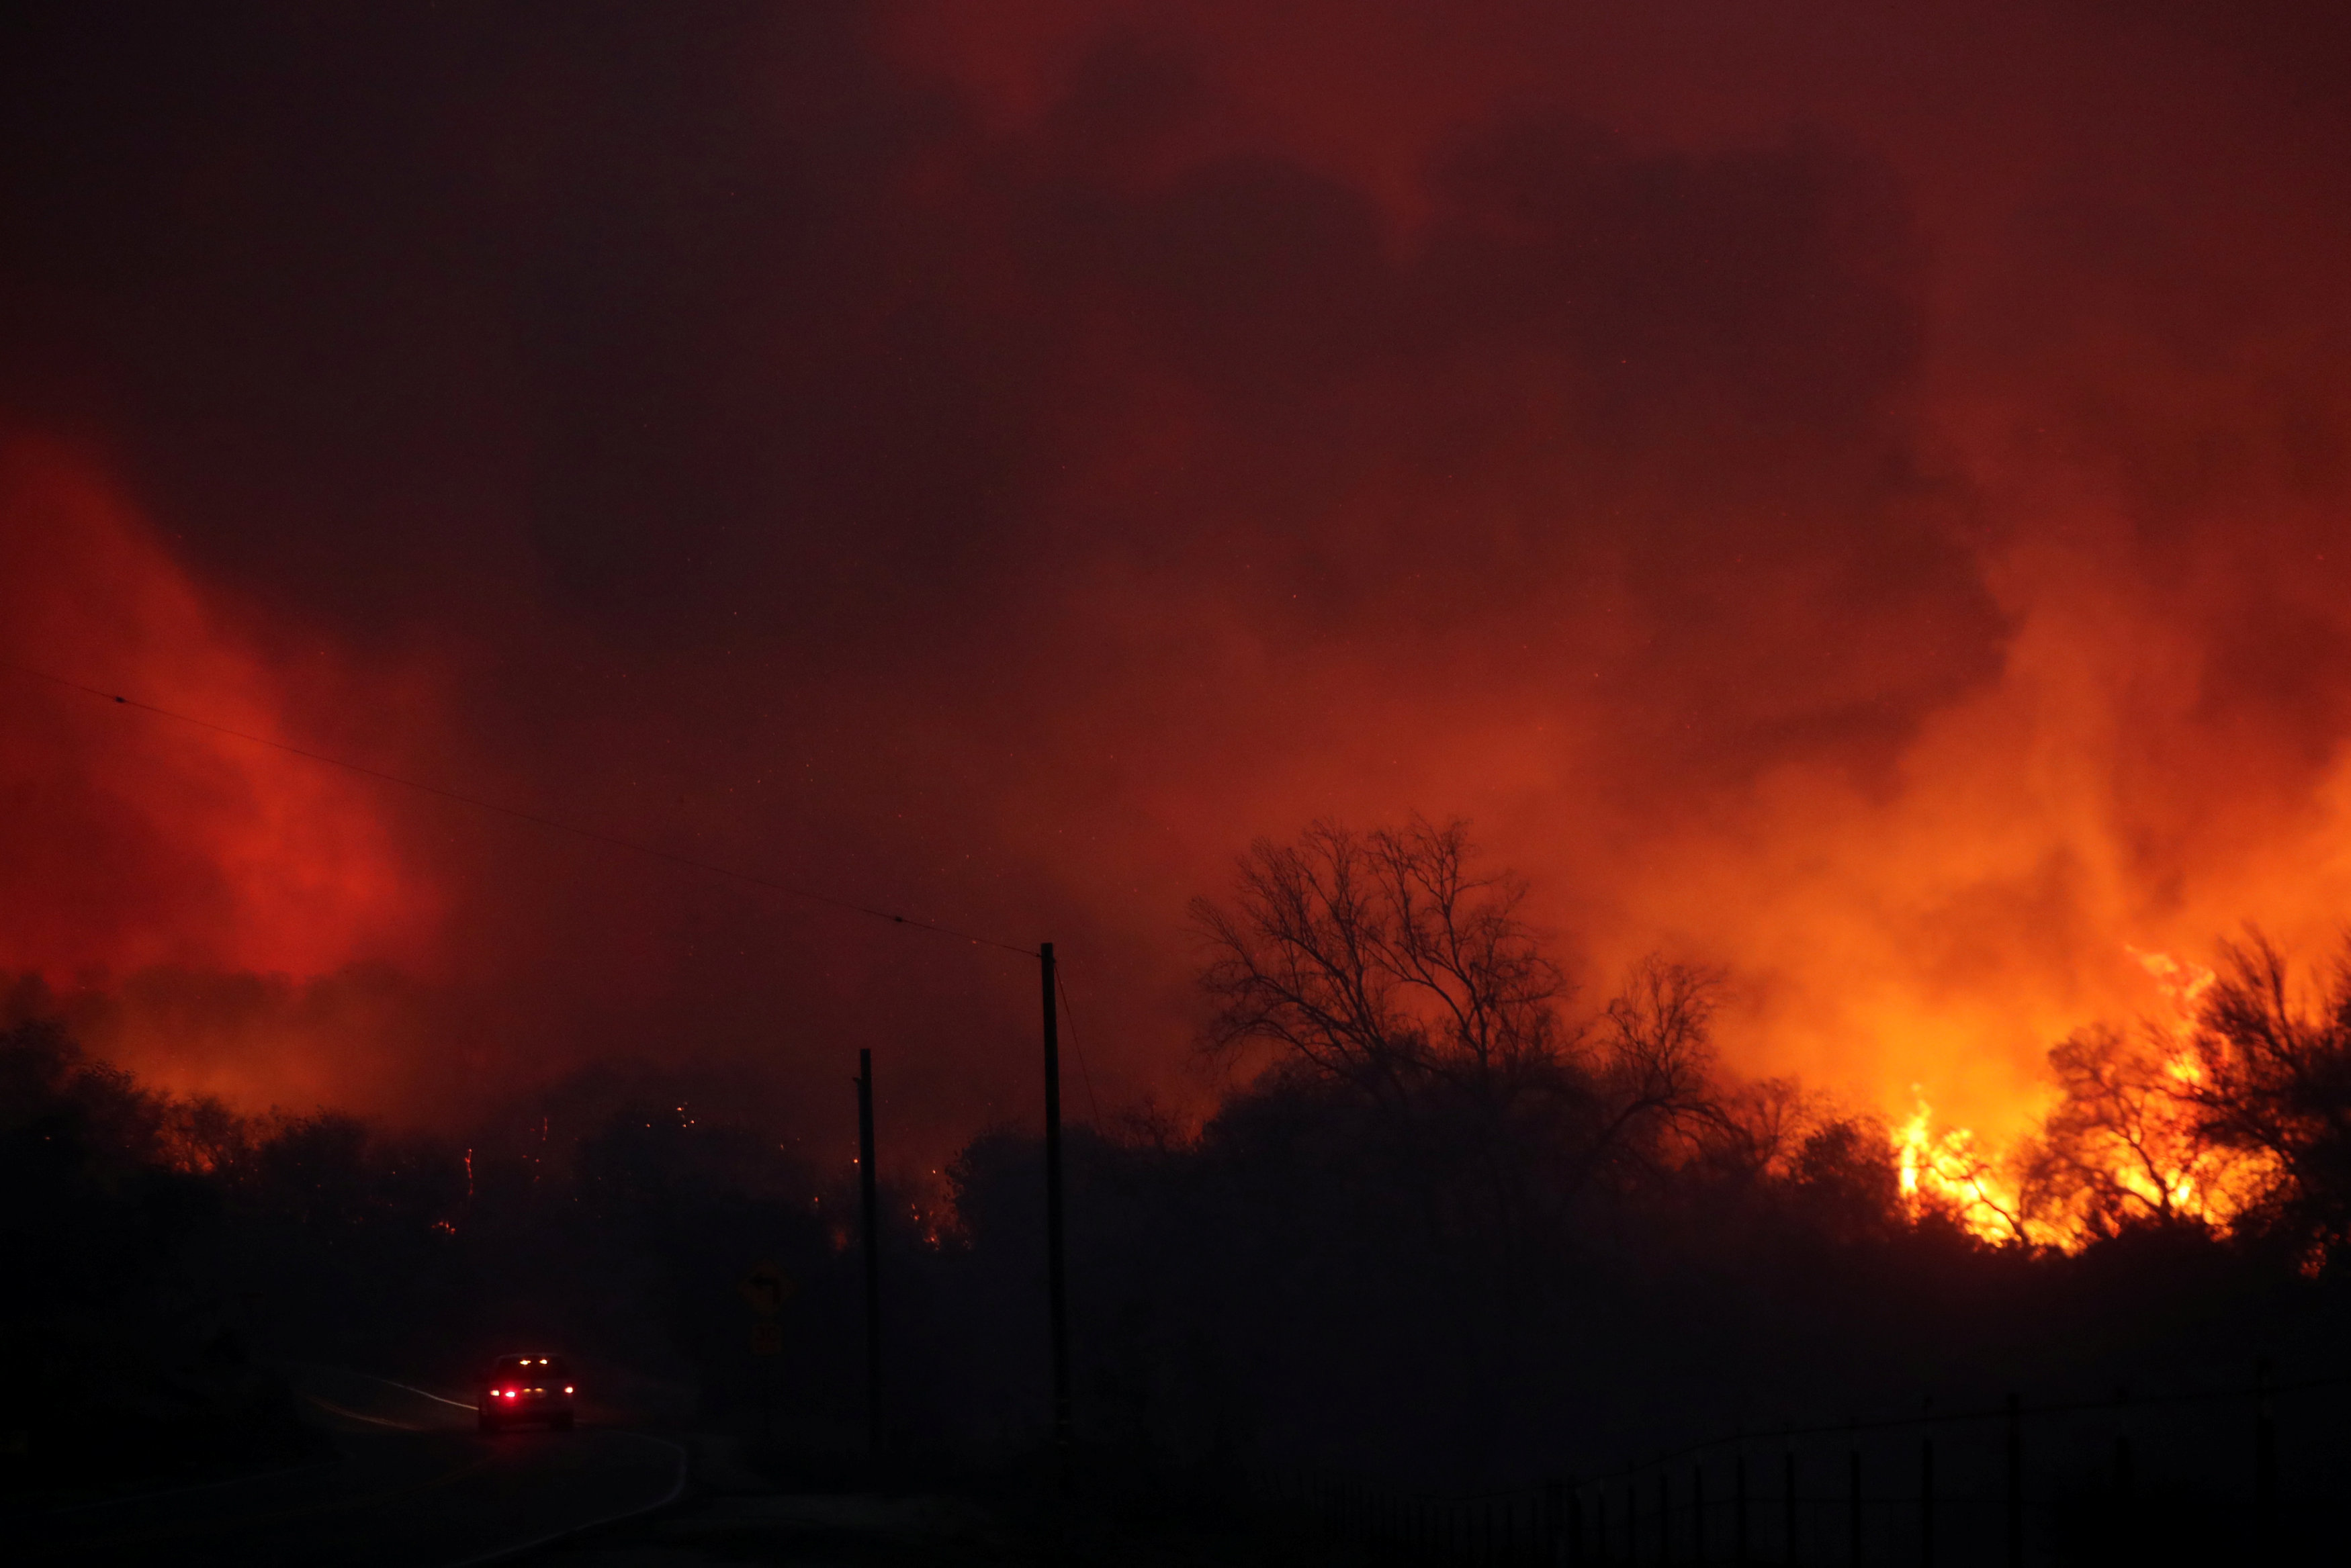 Ανεξέλεγκτα καίνε οι καταστροφικές πυρκαγιές στην Καλιφόρνια